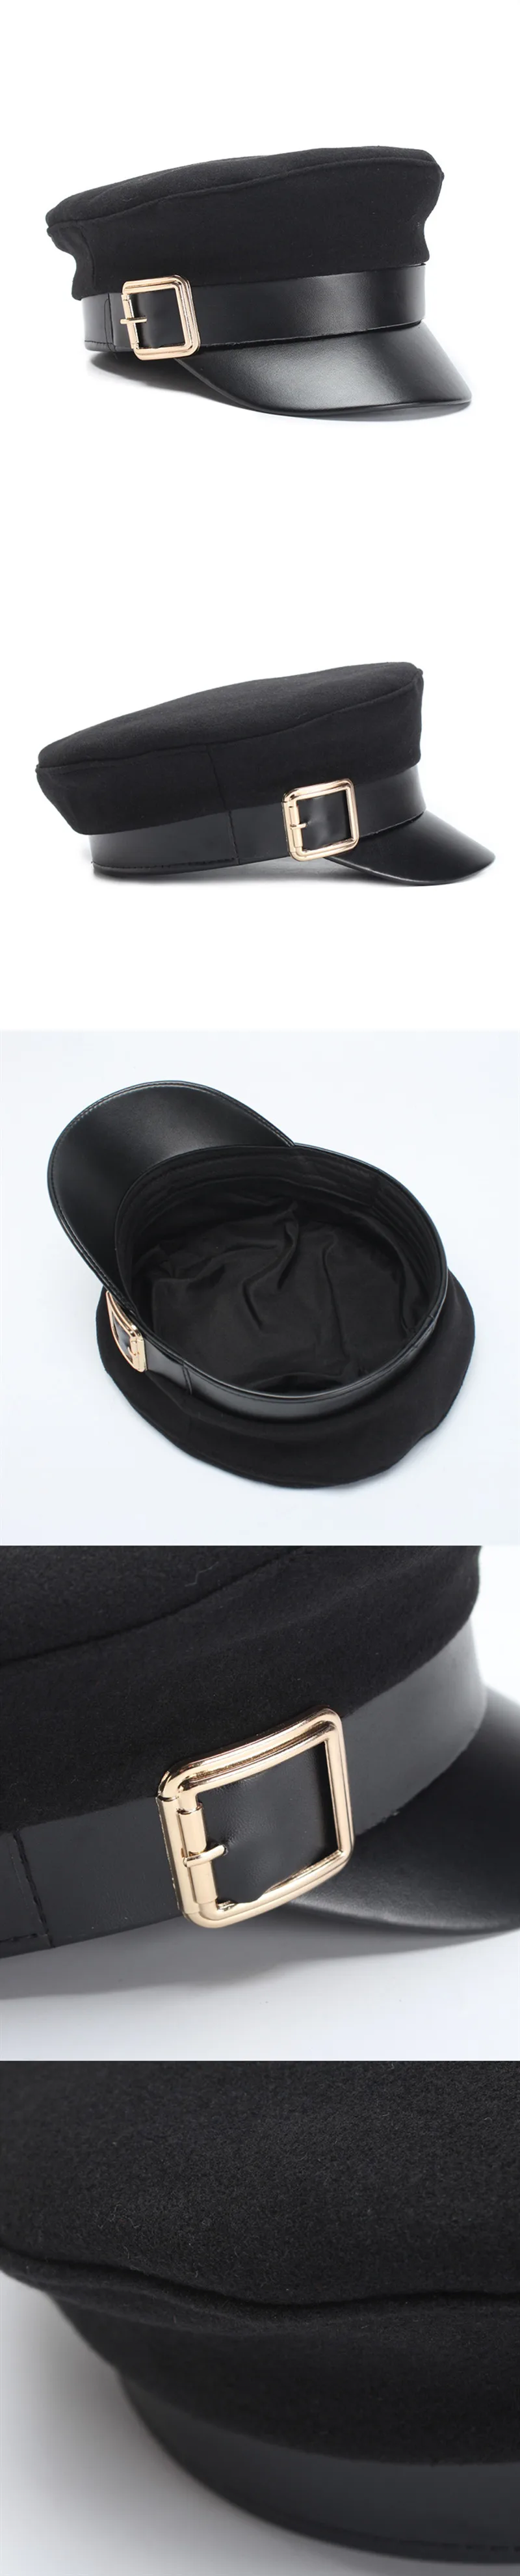 SHALUOTAOTAO, осенне-зимний теплый шерстяной армейские кепки для женщин, тренд, индивидуальная плоская кепка, Snapback, модные женские брендовые кепки s